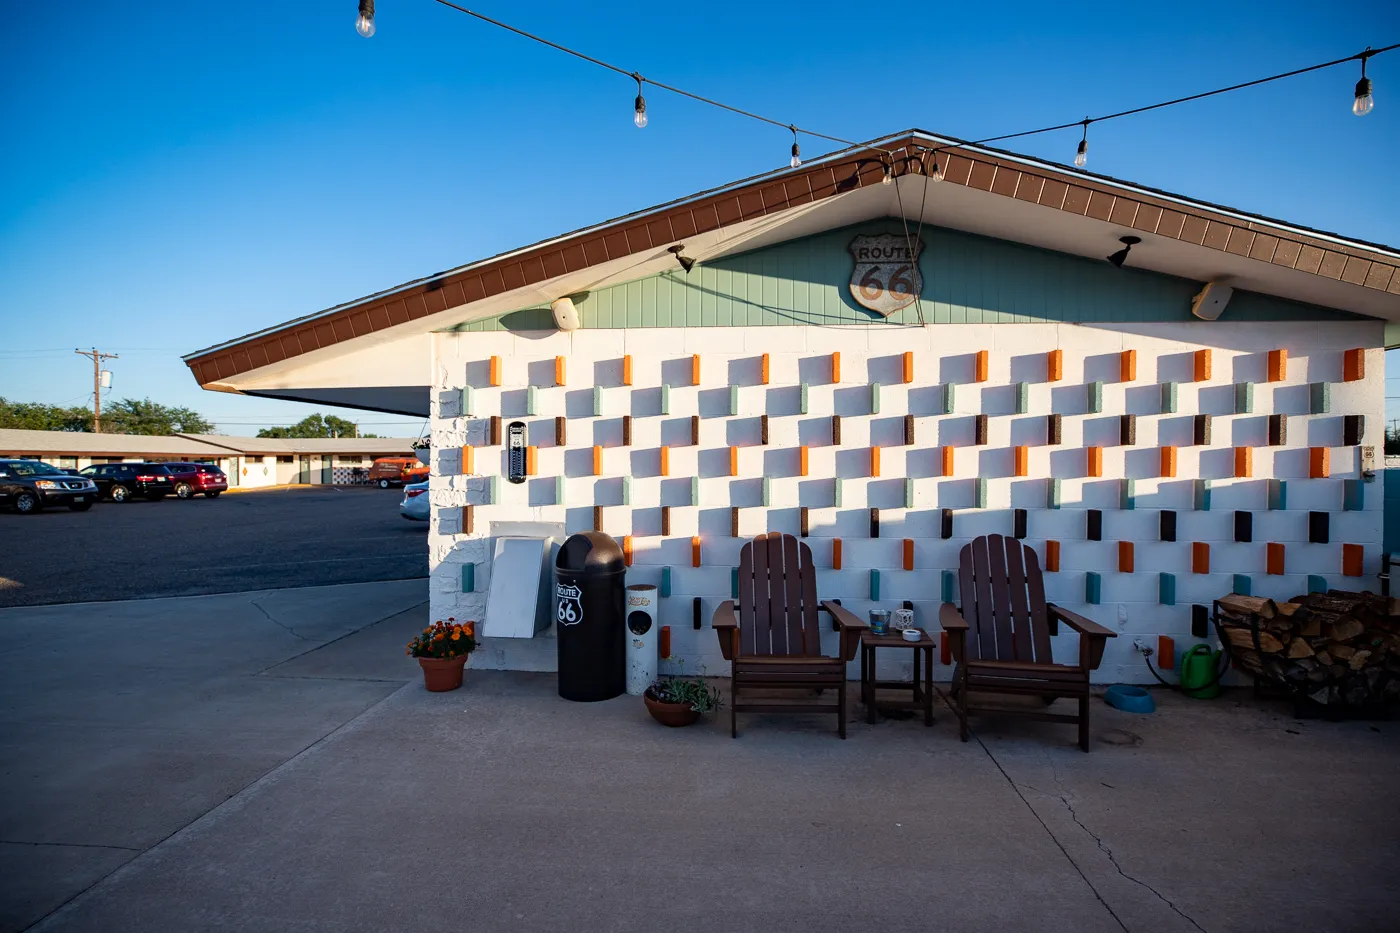 Courtyard and Burma Shave Murals at Motel Safari in Tucumcari, New Mexico (Route 66 Motel)